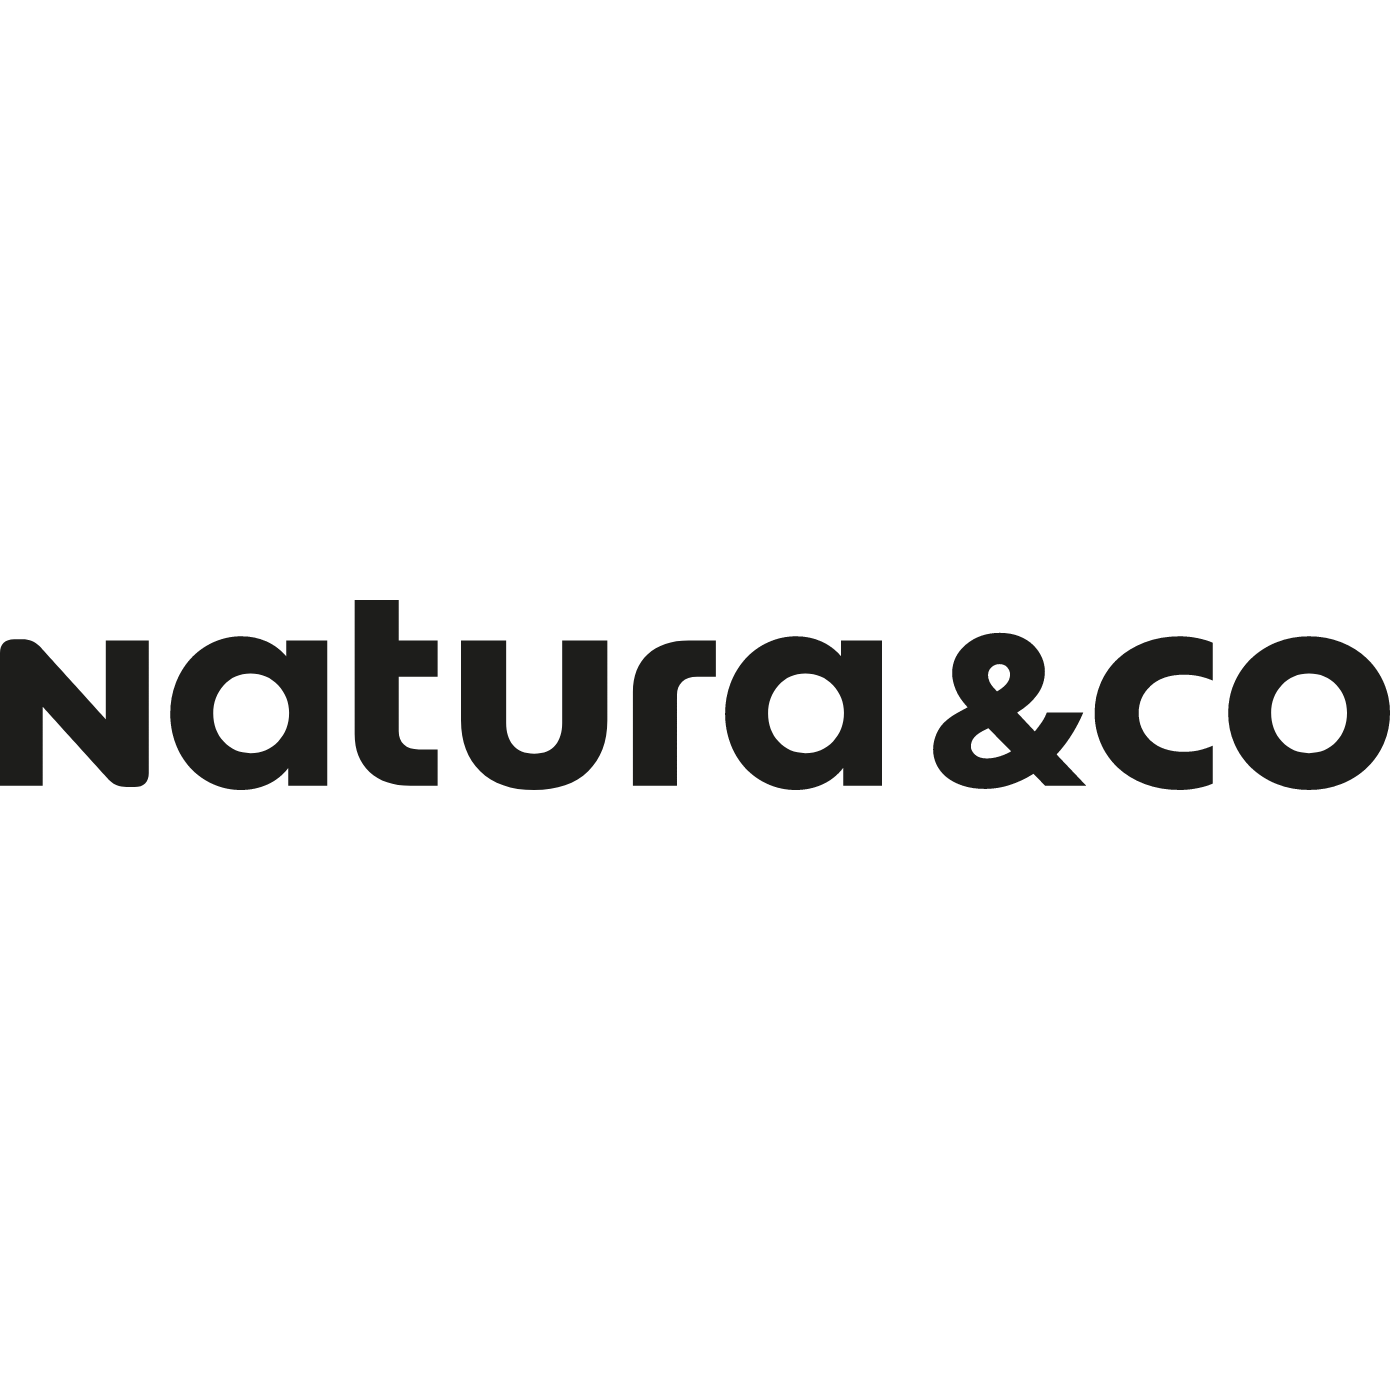 Natura&Co logo (PNG transparent)